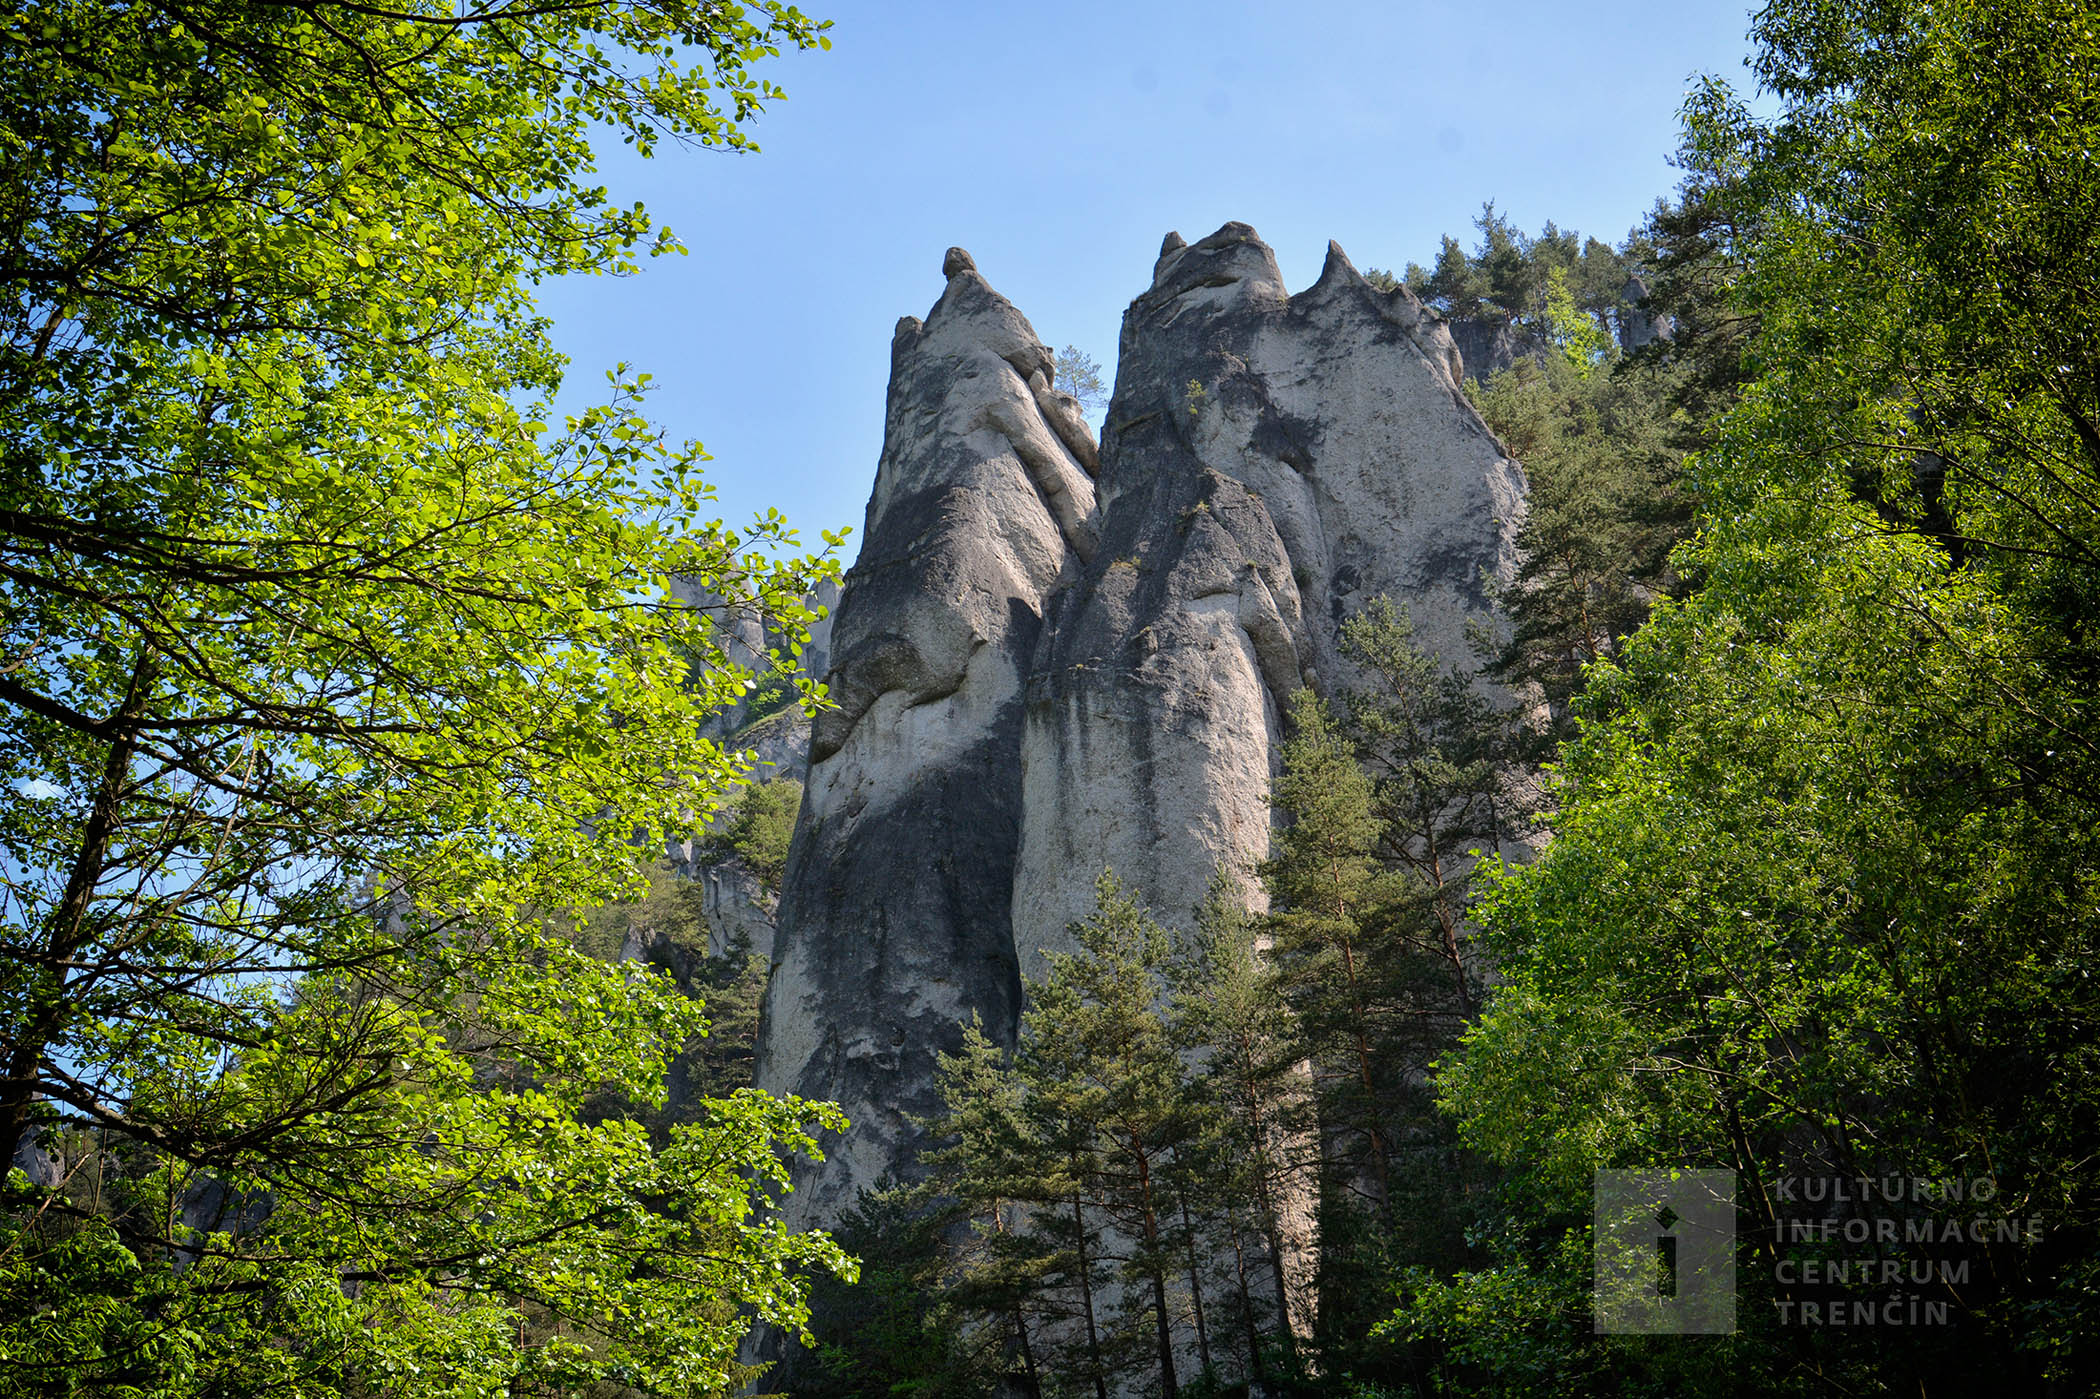 Súľovské skaly sa nachádzajú cca 10 km od mesta Bytče.